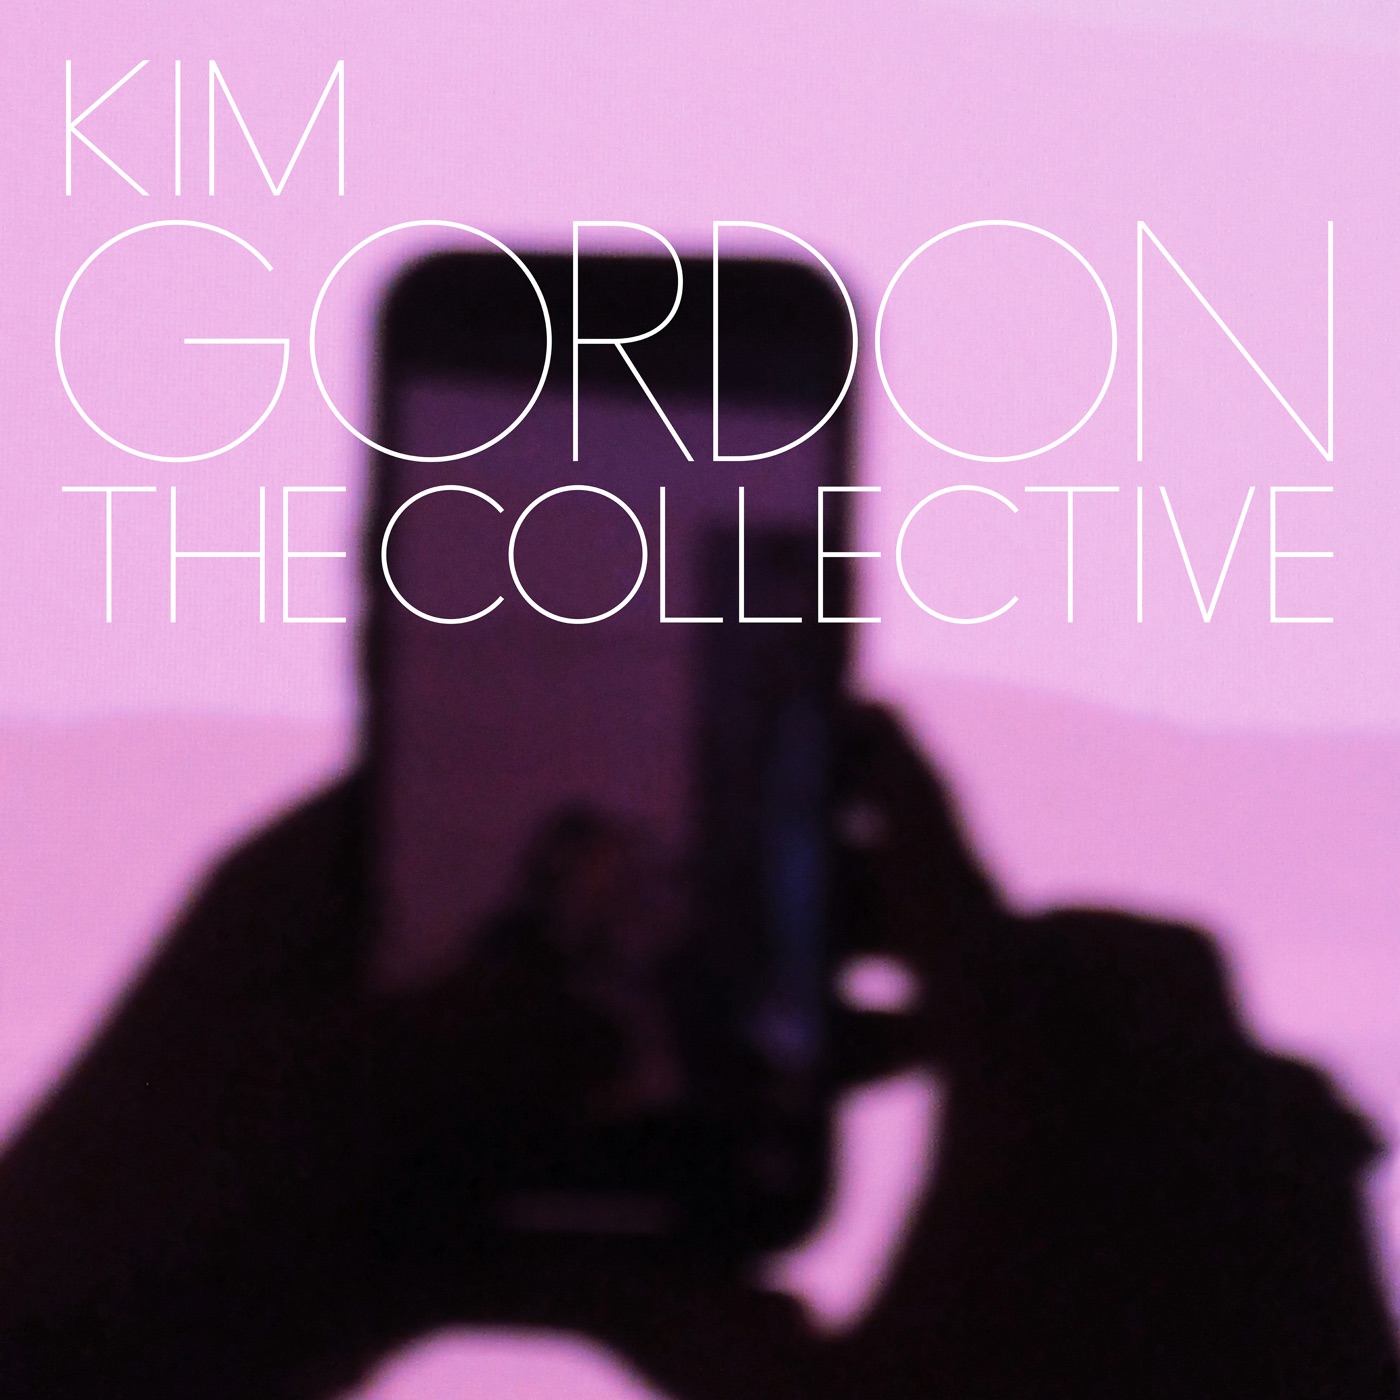 Dream Dollar by Kim Gordon